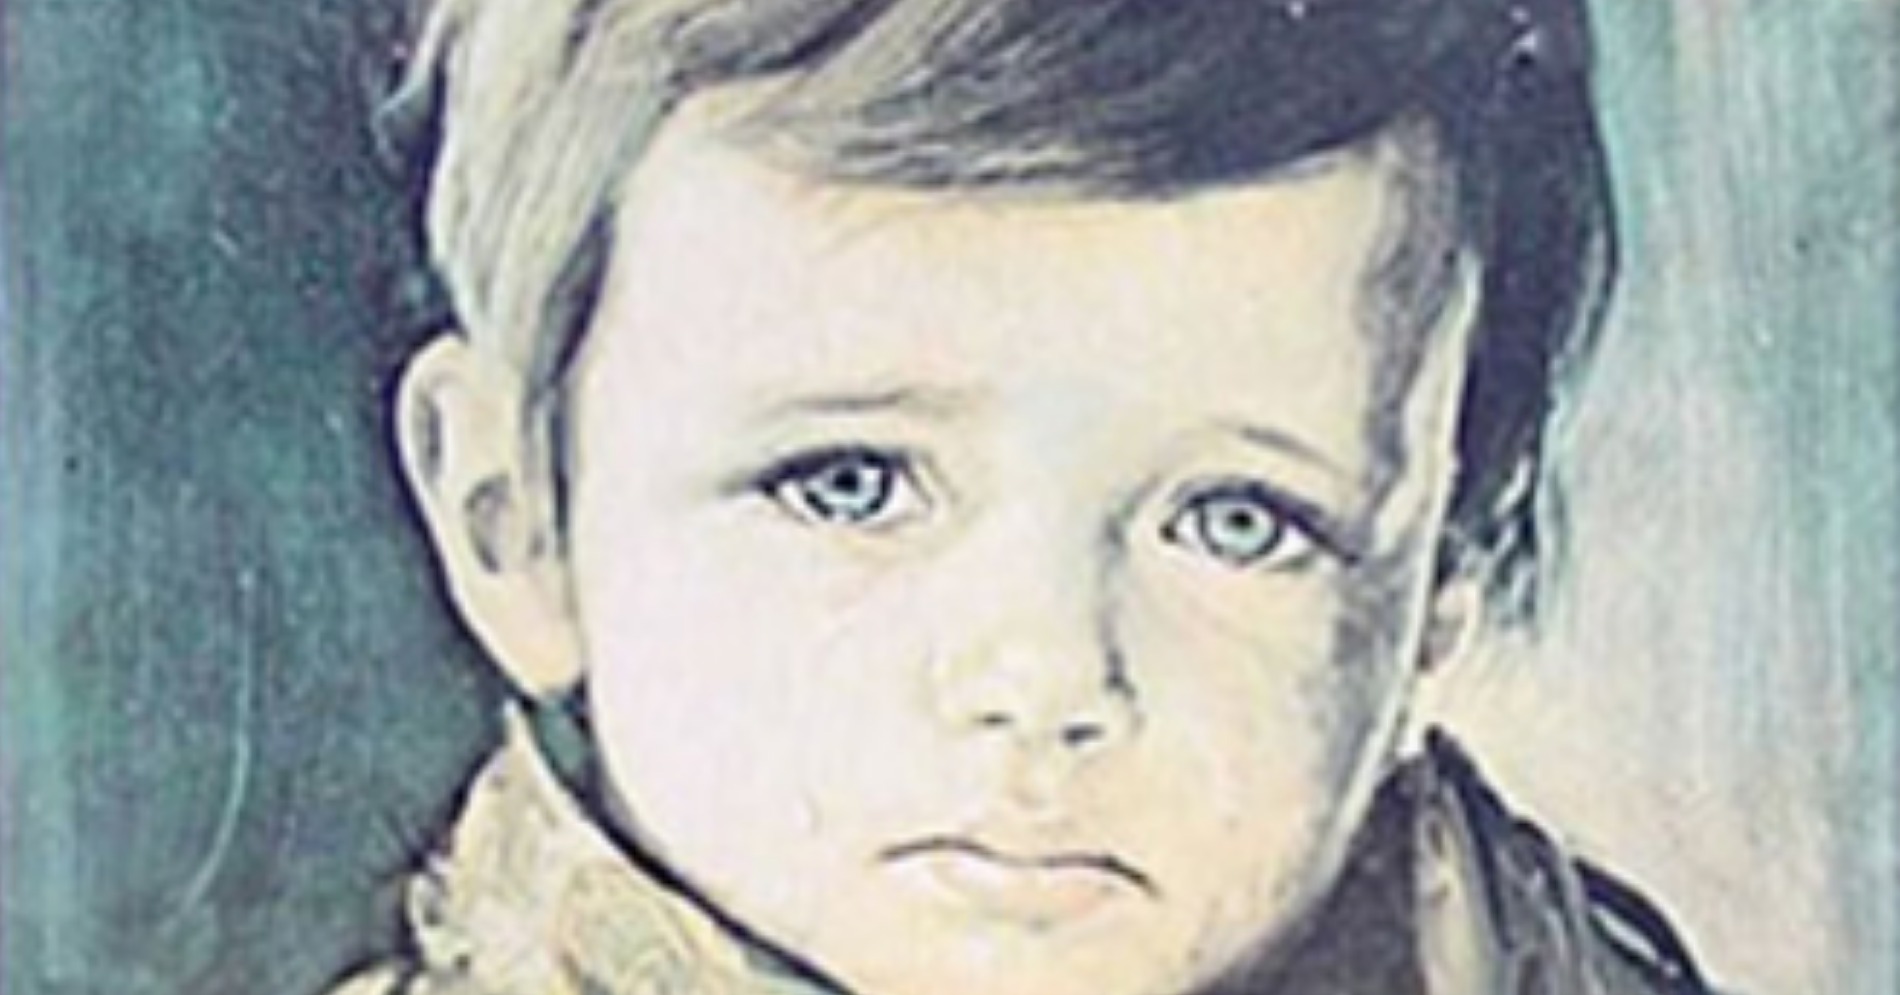  Replika lukisan Crying Boy (Sumber gambar: pensamientocritico.org)